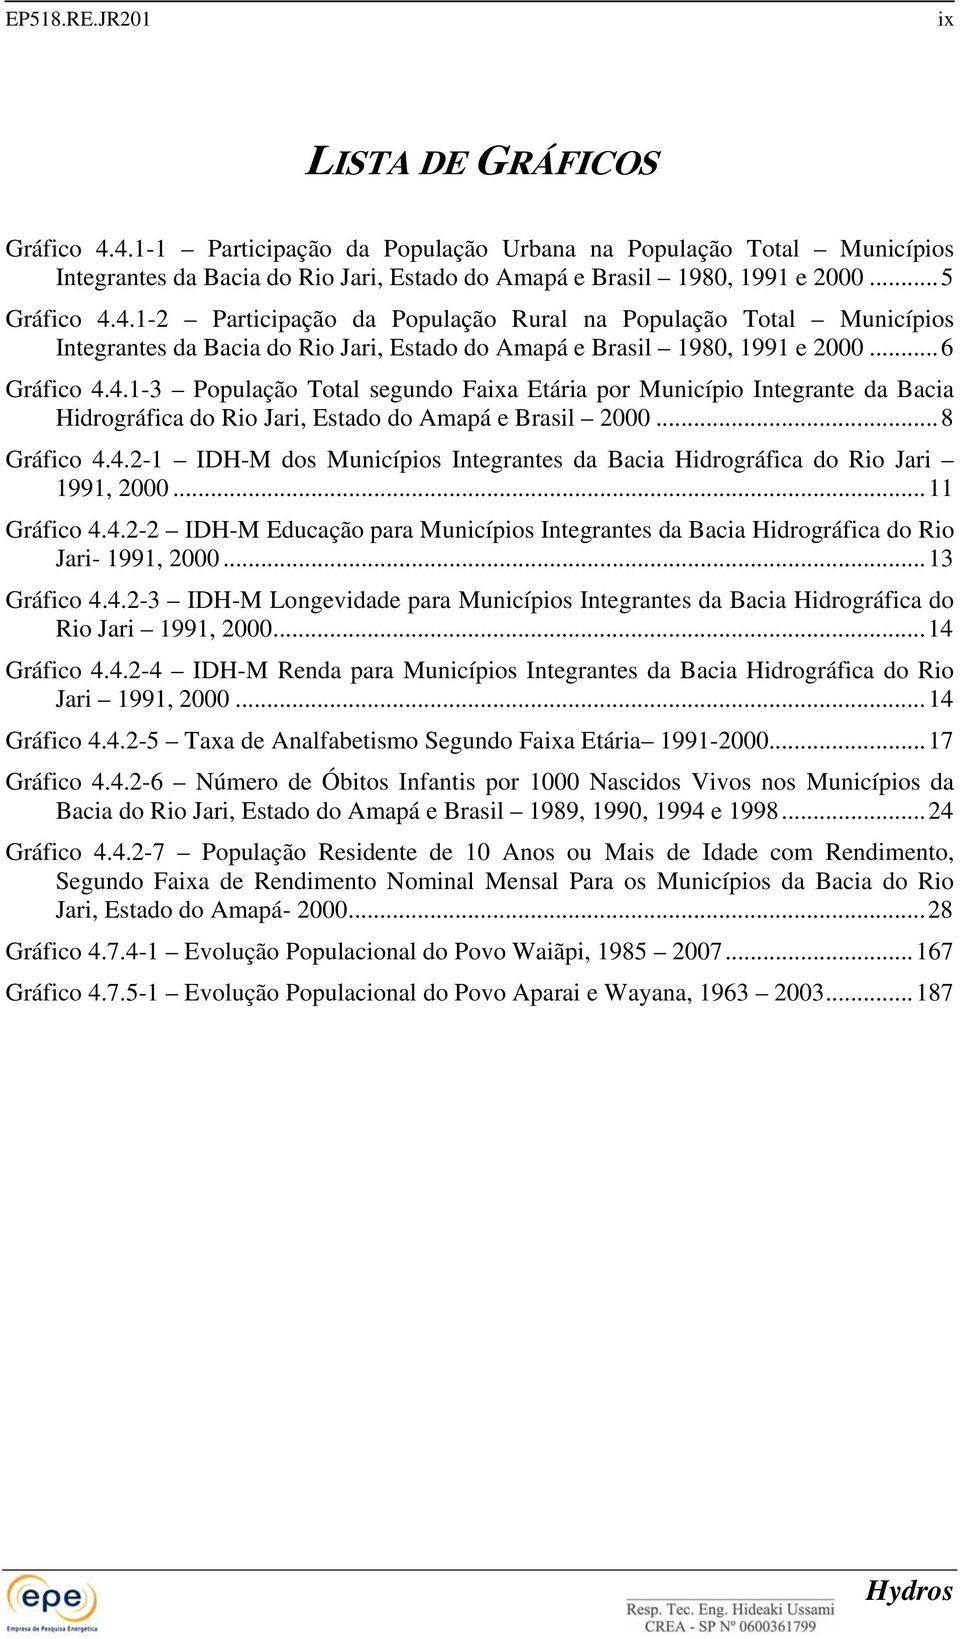 ..8 Gráfico 4.4.2-1 IDH-M dos Municípios Integrantes da Bacia Hidrográfica do Rio Jari 1991, 2000...11 Gráfico 4.4.2-2 IDH-M Educação para Municípios Integrantes da Bacia Hidrográfica do Rio Jari- 1991, 2000.